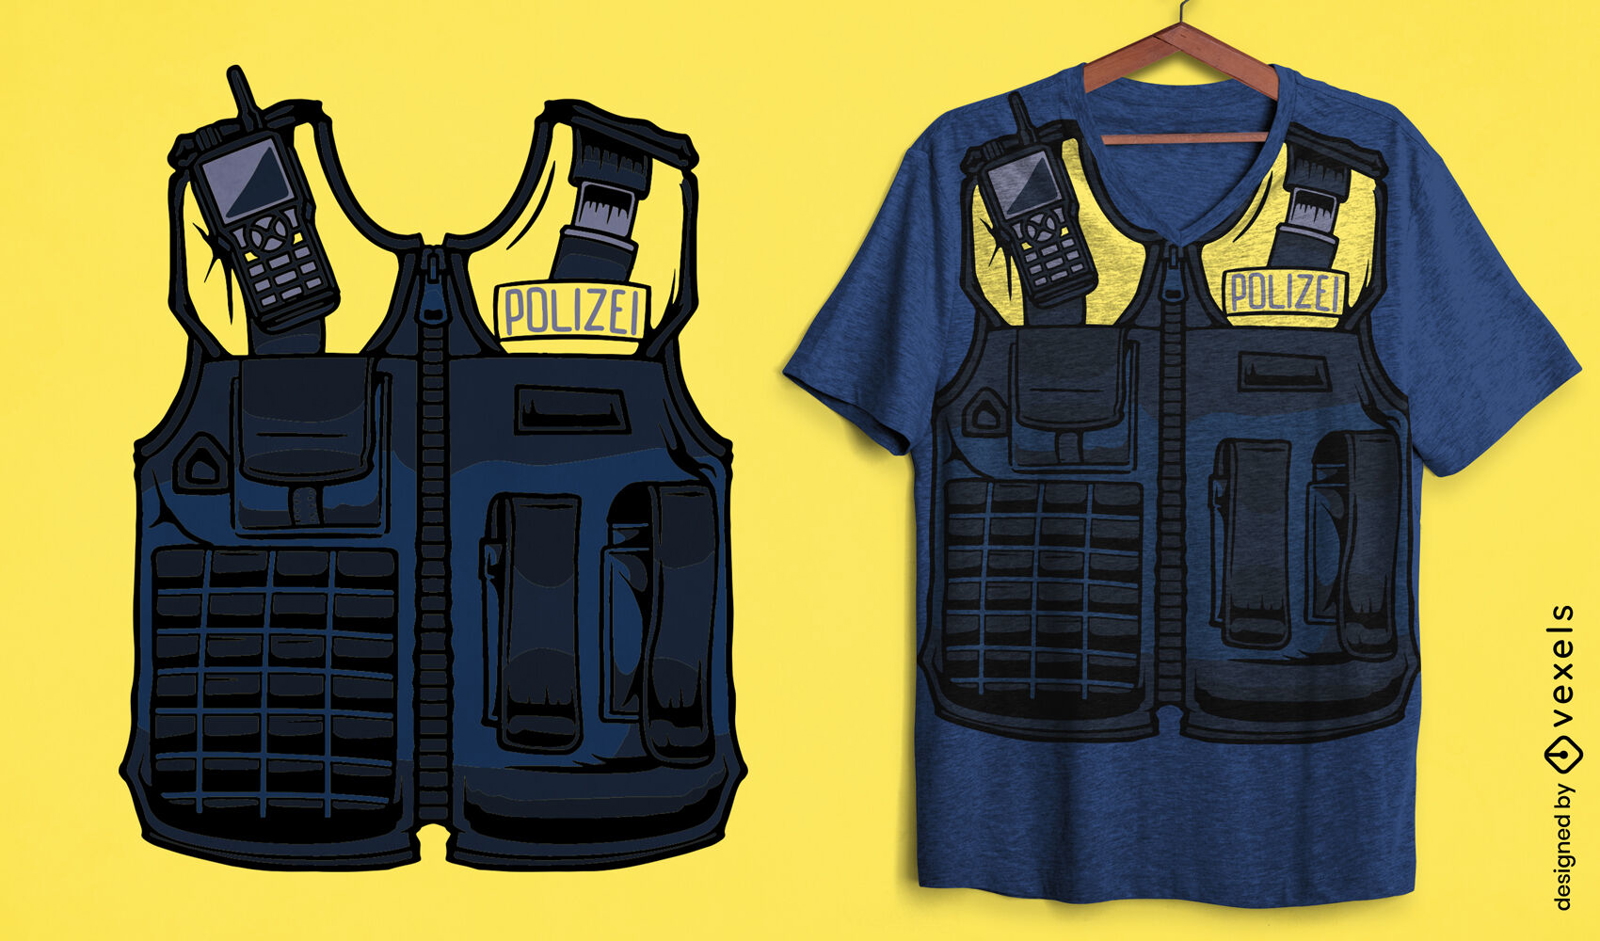 Diseño de camiseta de uniforme de policía alemana.